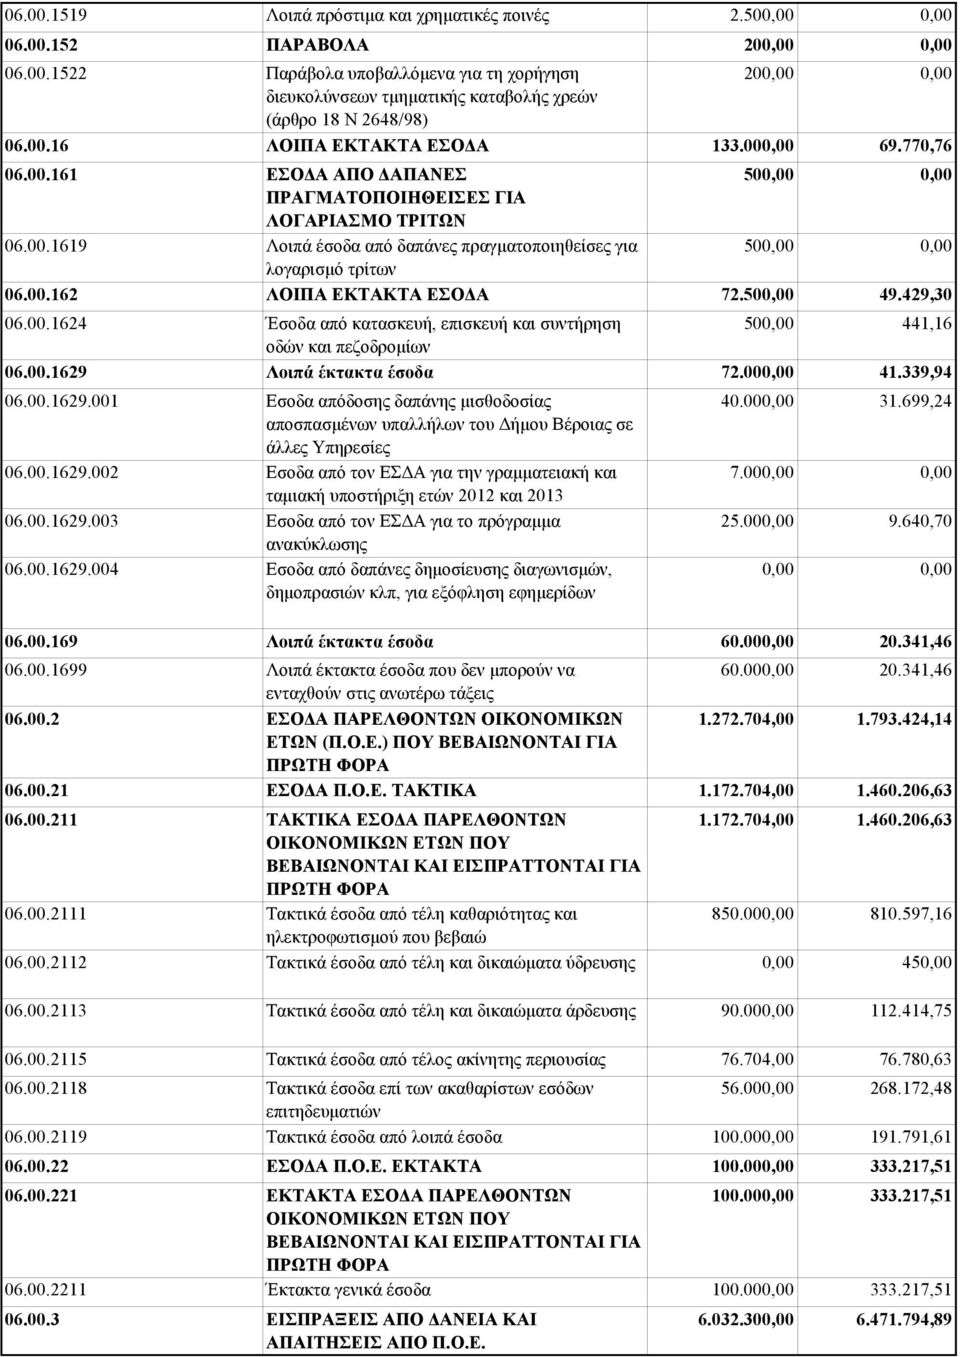 00.1629 Λοιπά έκτακτα έσοδα 06.00.1629.001 Εσοδα απόδοσης δαπάνης μισθοδοσίας αποσπασμένων υπαλλήλων του Δήμου Βέροιας σε άλλες Υπηρεσίες 06.00.1629.002 Εσοδα από τον ΕΣΔΑ για την γραμματειακή και ταμιακή υποστήριξη ετών 2012 και 2013 06.